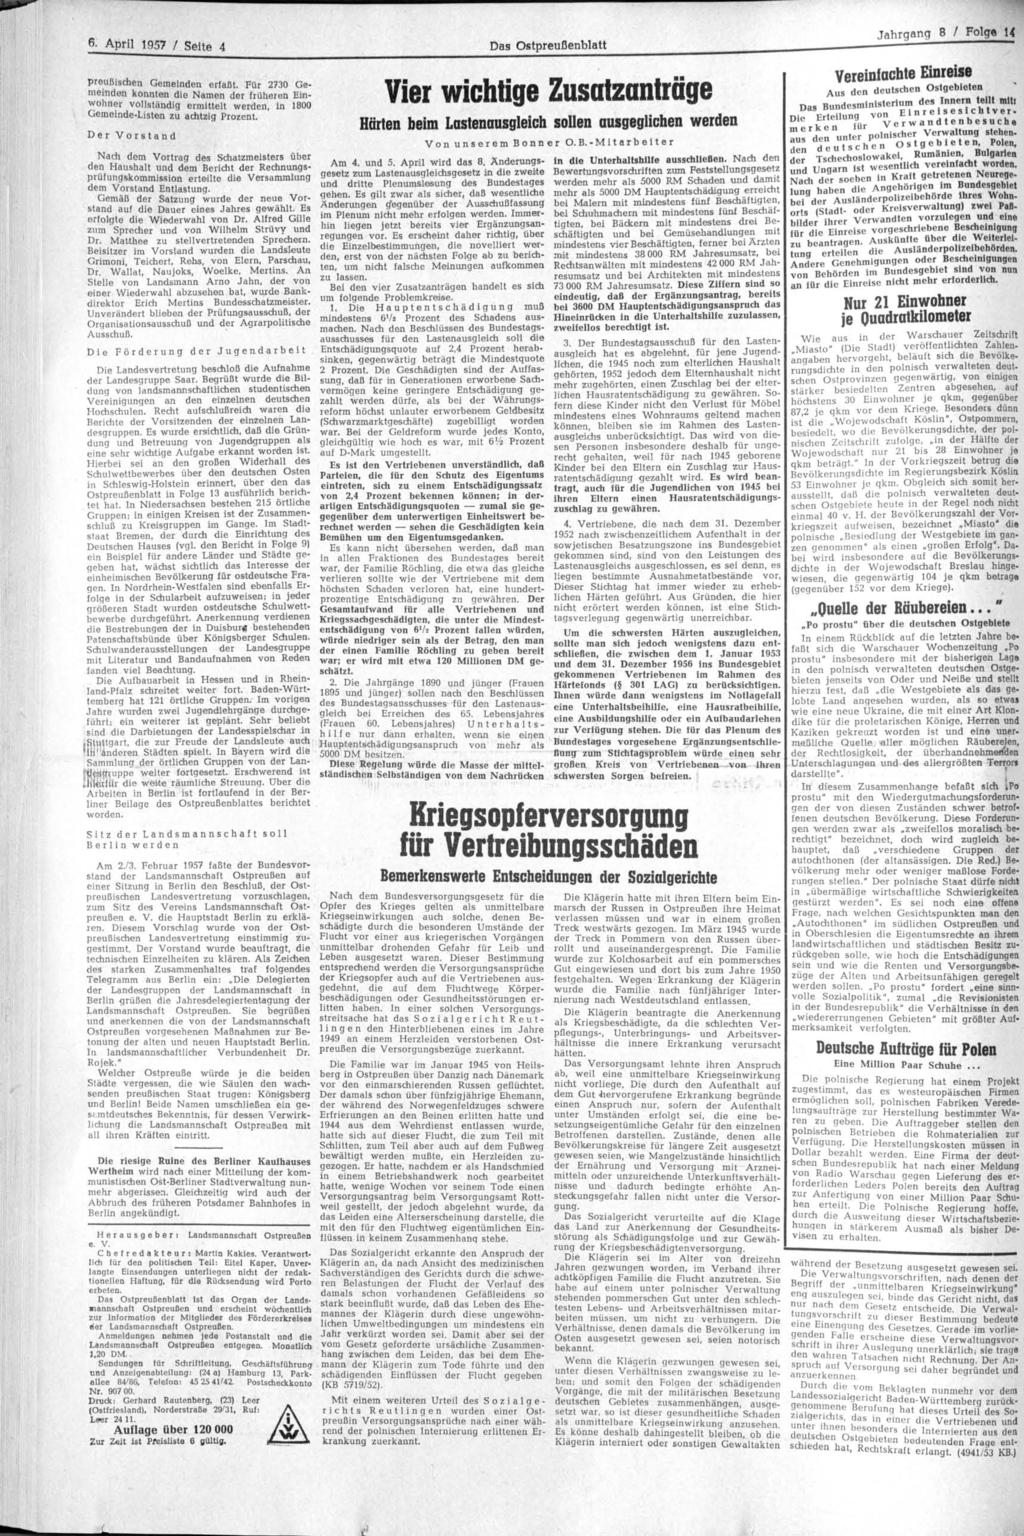 6 - April 1957 / Seite 4 Das Ostpreußenblatt Jahrgang 8 / Folge U preußischen Gemeinden erfaßt.